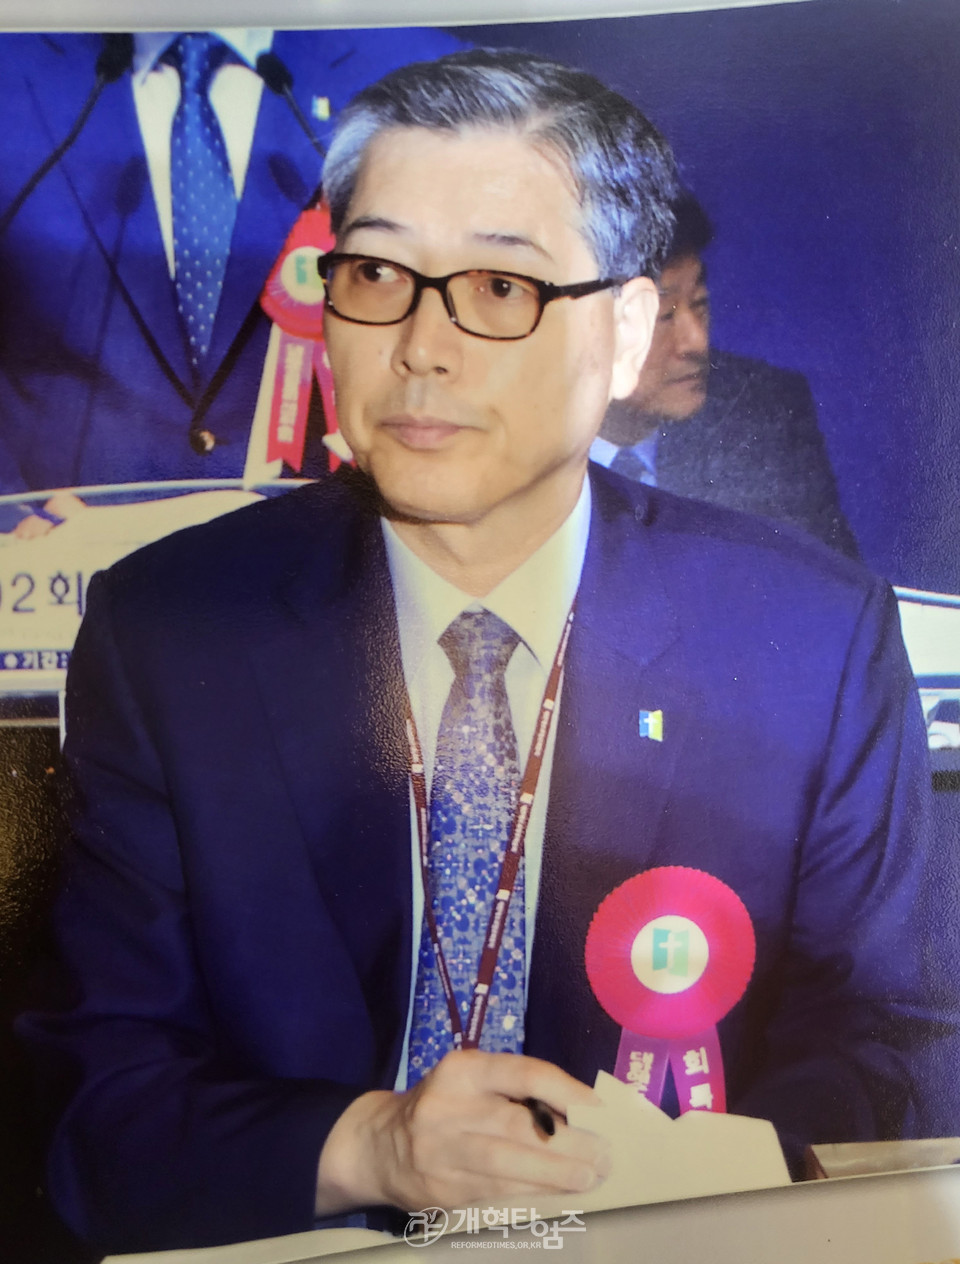 제102회 총회 때의 회록 서기 장재덕 목사 모습